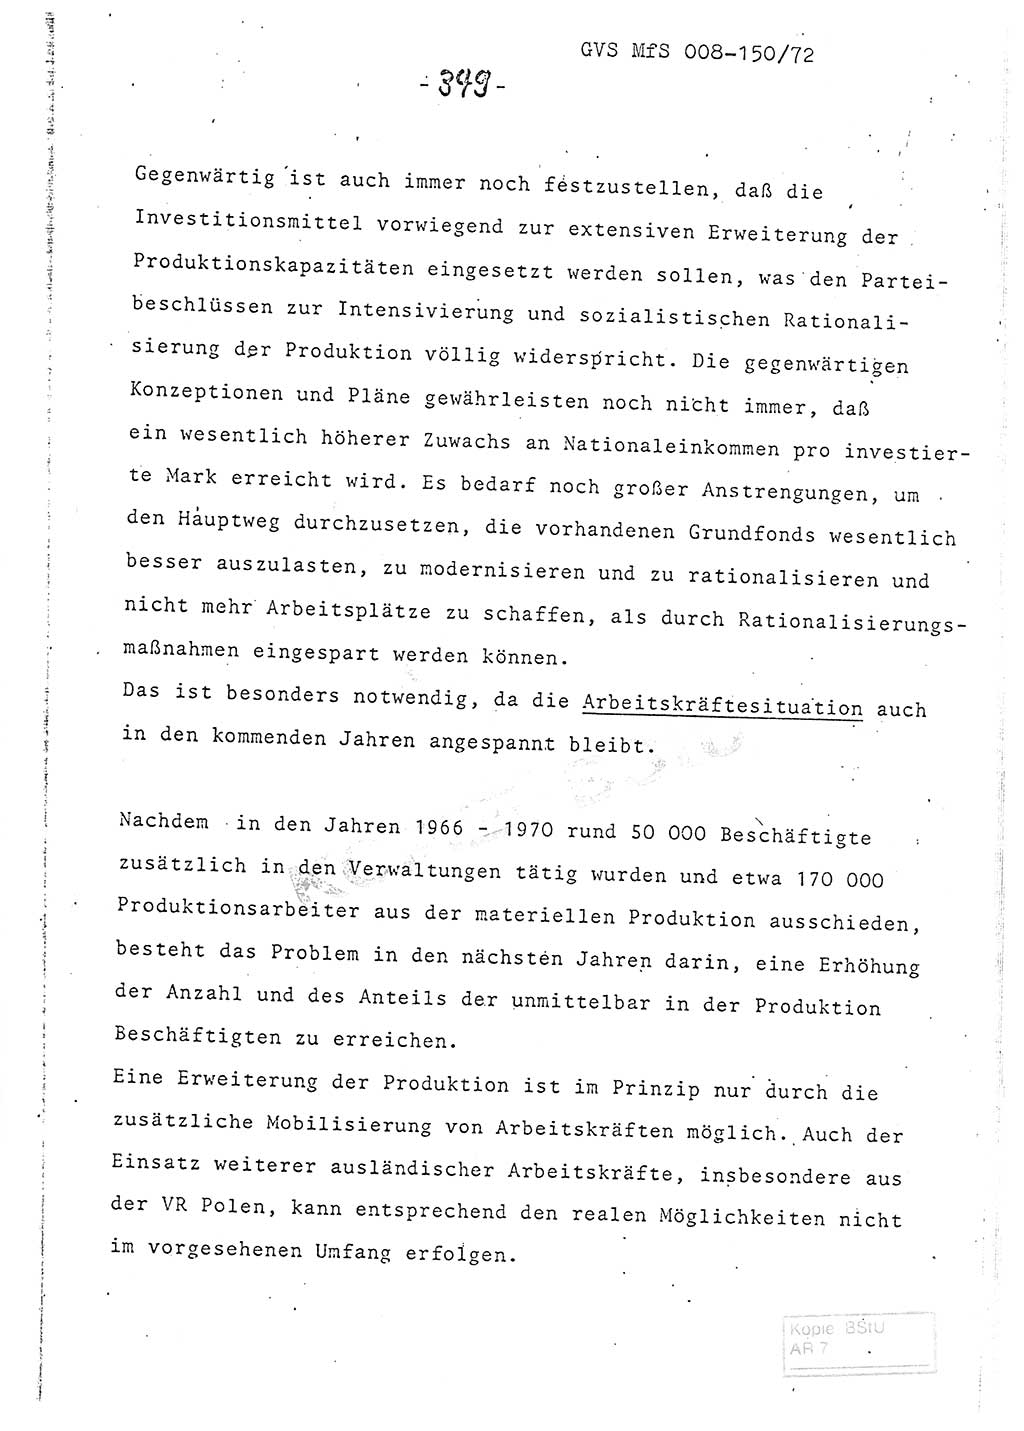 Referat (Entwurf) des Genossen Minister (Generaloberst Erich Mielke) auf der Dienstkonferenz 1972, Ministerium für Staatssicherheit (MfS) [Deutsche Demokratische Republik (DDR)], Der Minister, Geheime Verschlußsache (GVS) 008-150/72, Berlin 25.2.1972, Seite 349 (Ref. Entw. DK MfS DDR Min. GVS 008-150/72 1972, S. 349)